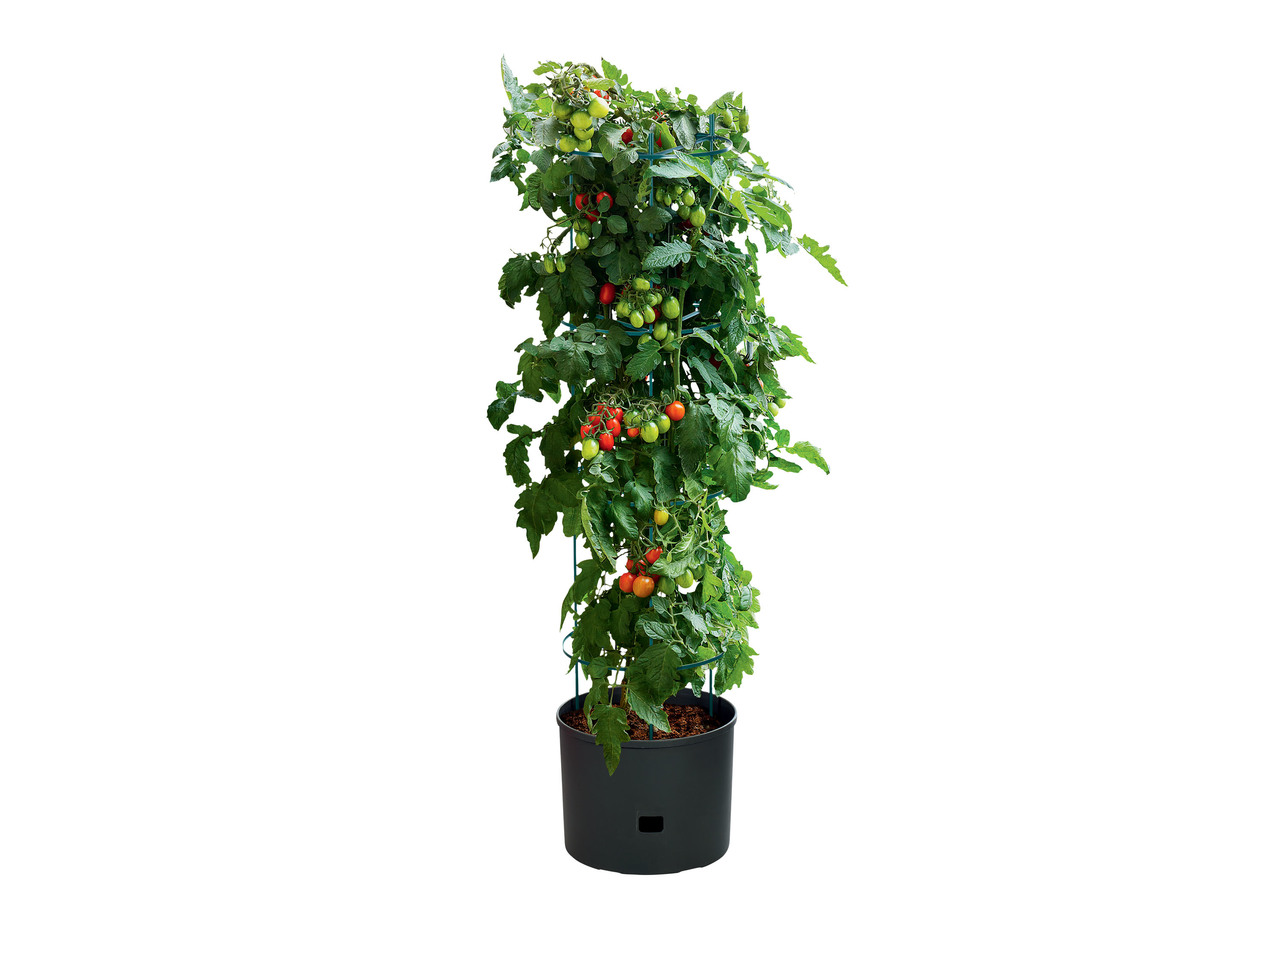 FLORABEST(R) Vaso para Plantar Tomates 20 L